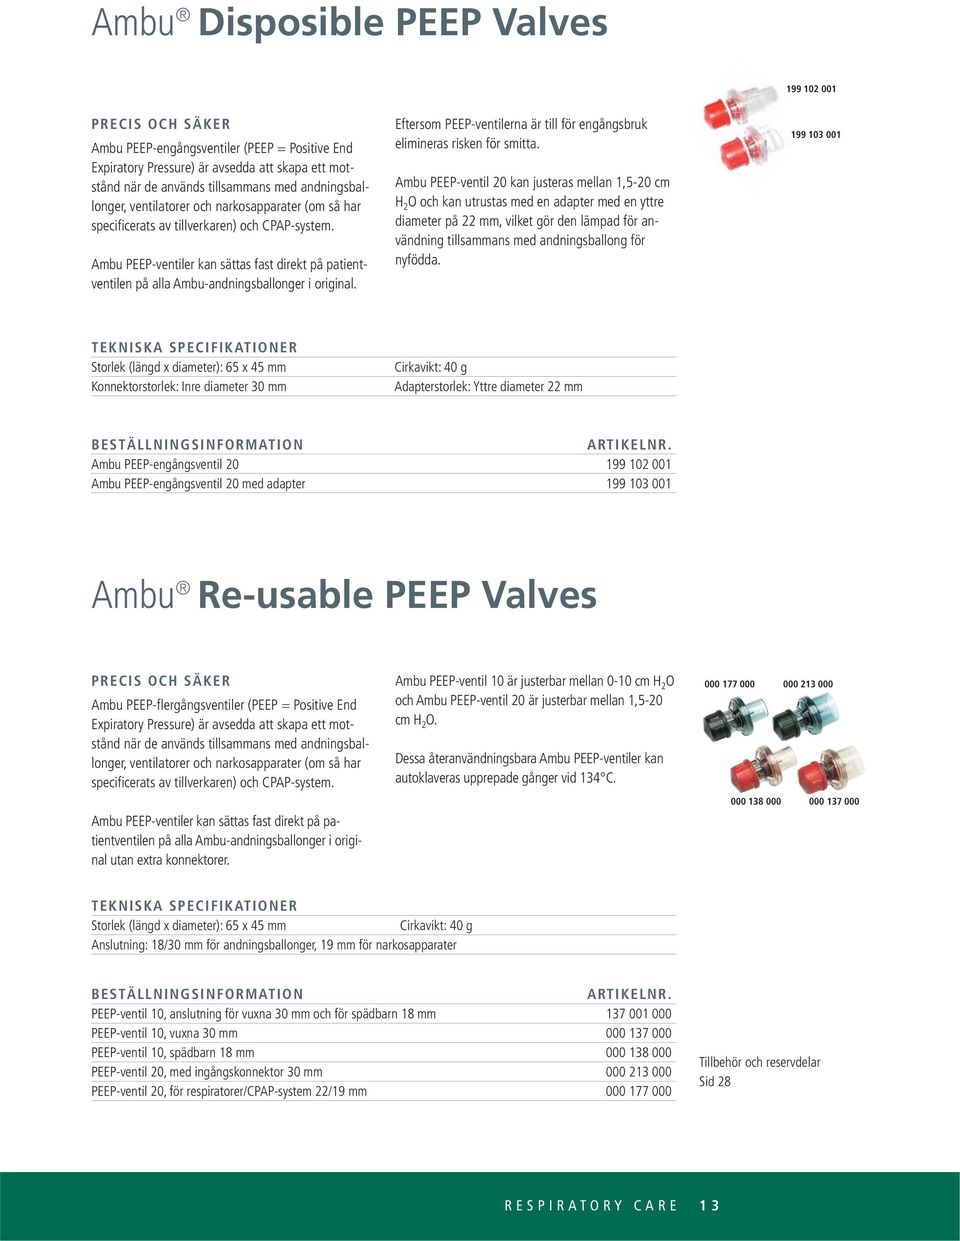 Ambu PEEP-ventiler kan sättas fast direkt på patientventilen på alla Ambu-andningsballonger i original. Eftersom PEEP-ventilerna är till för engångsbruk elimineras risken för smitta.